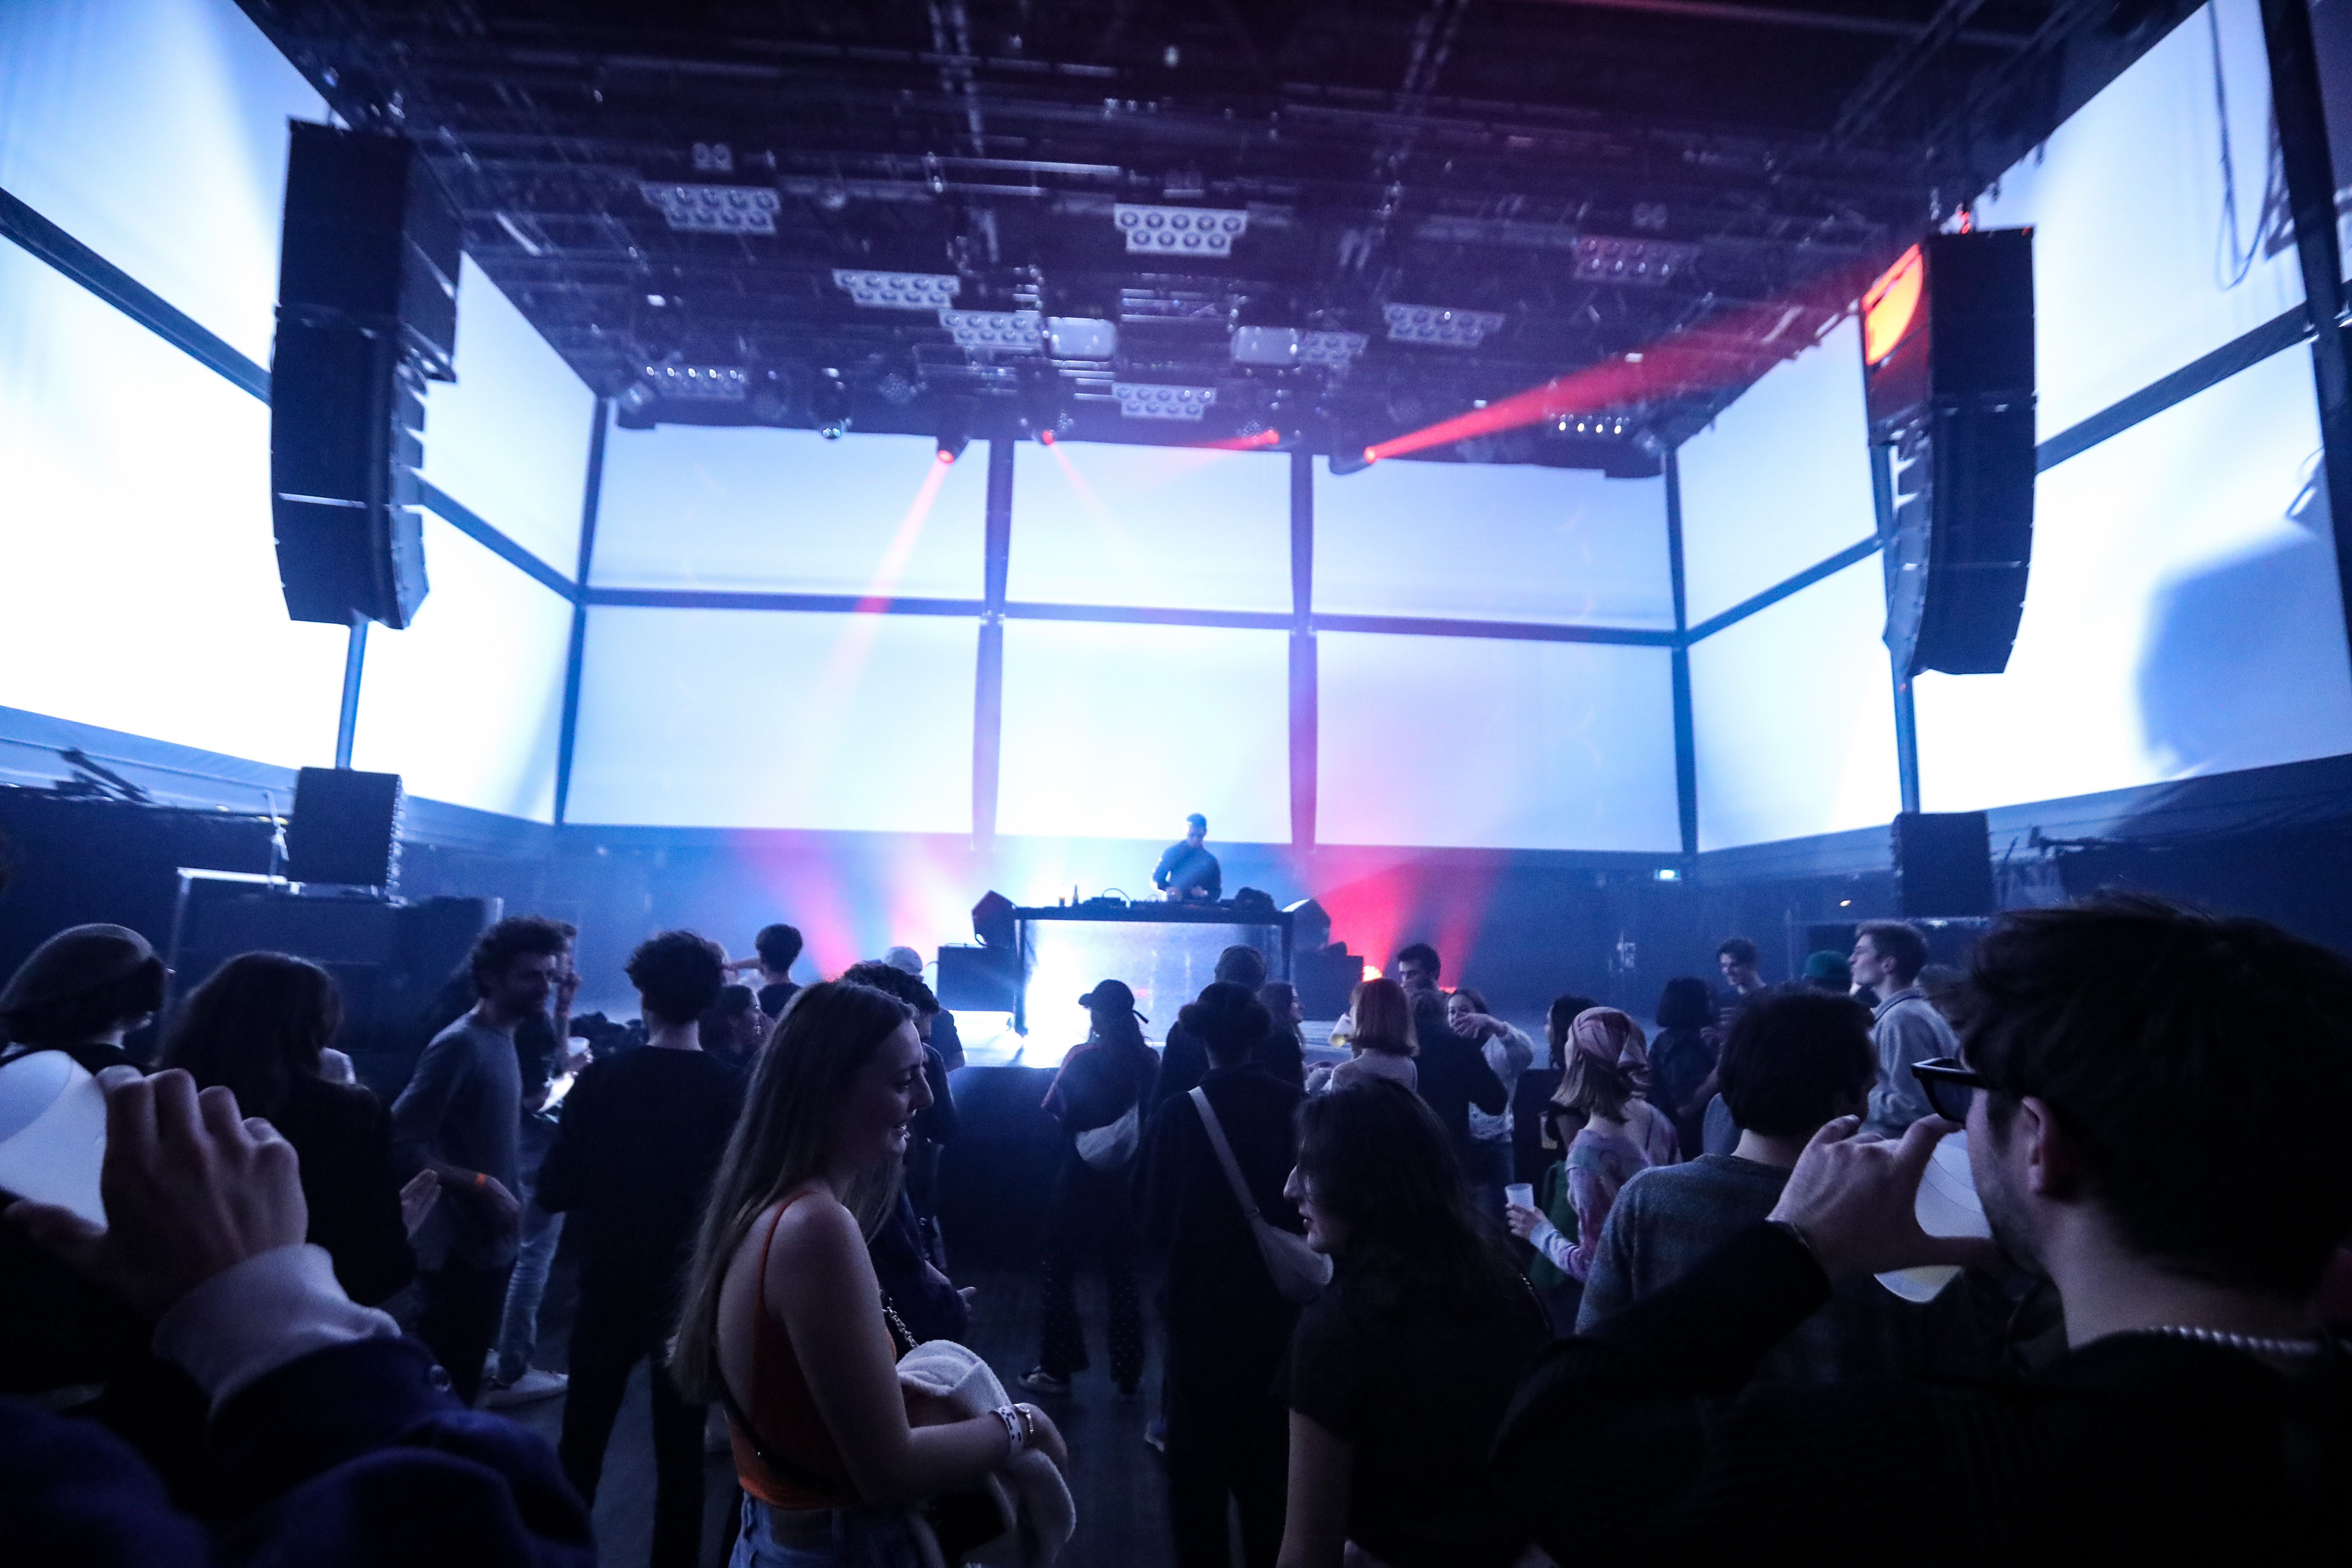 Leica x Xiaomi Launching Party at La Gaite Lyrique